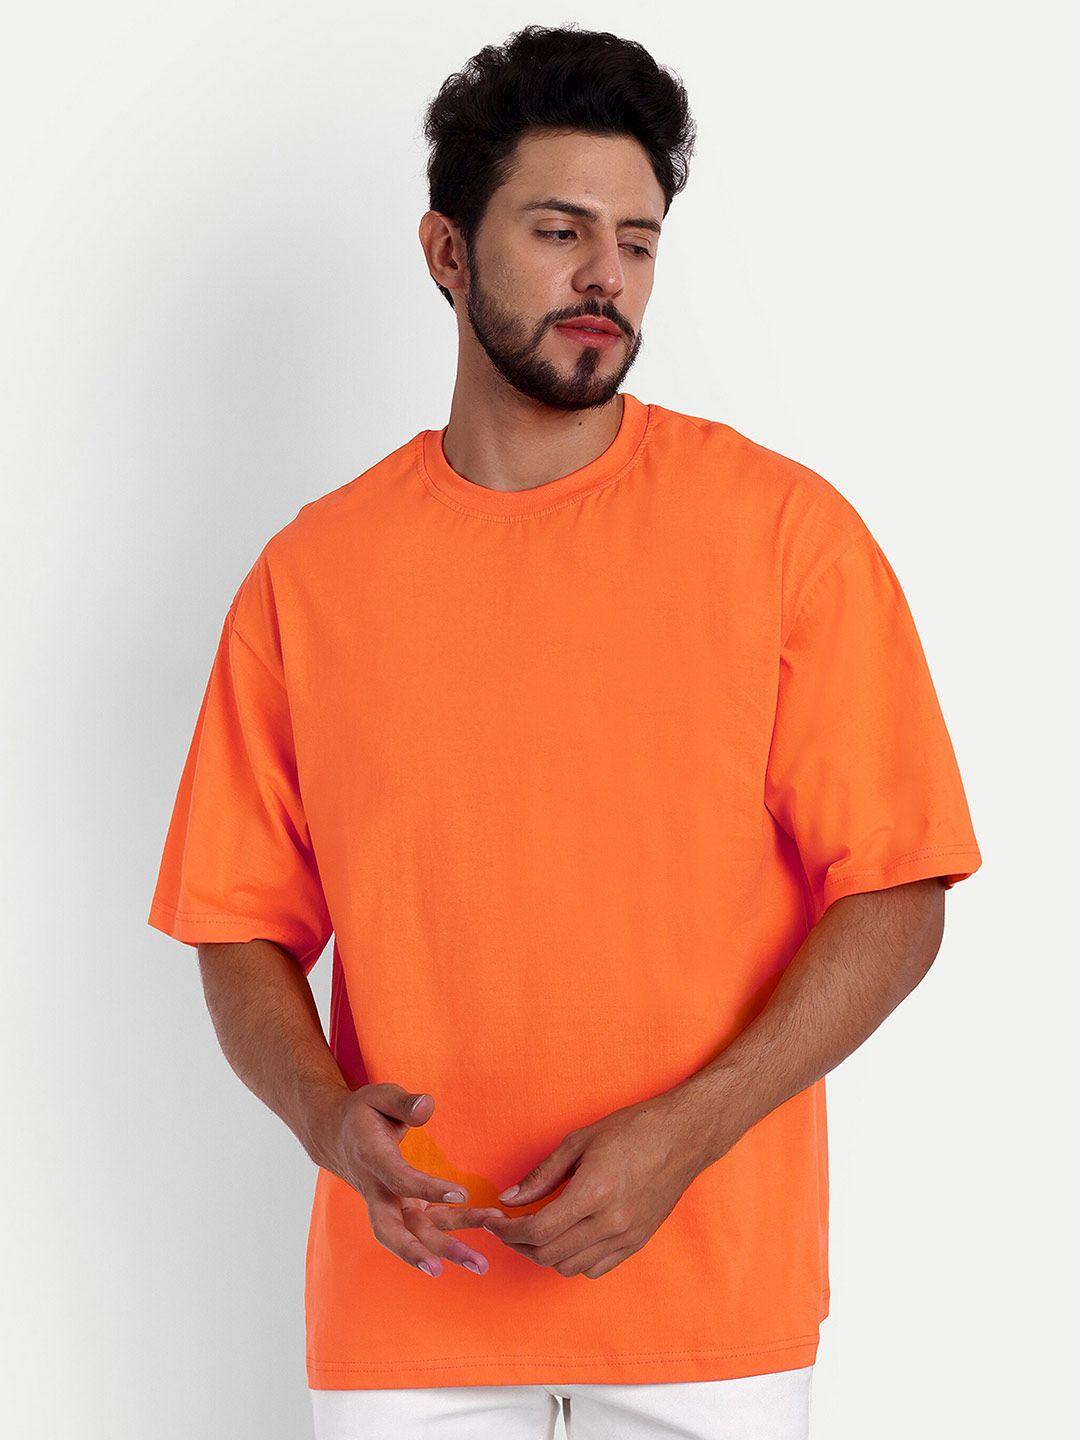 bloopers store men orange v-neck pockets loose t-shirt